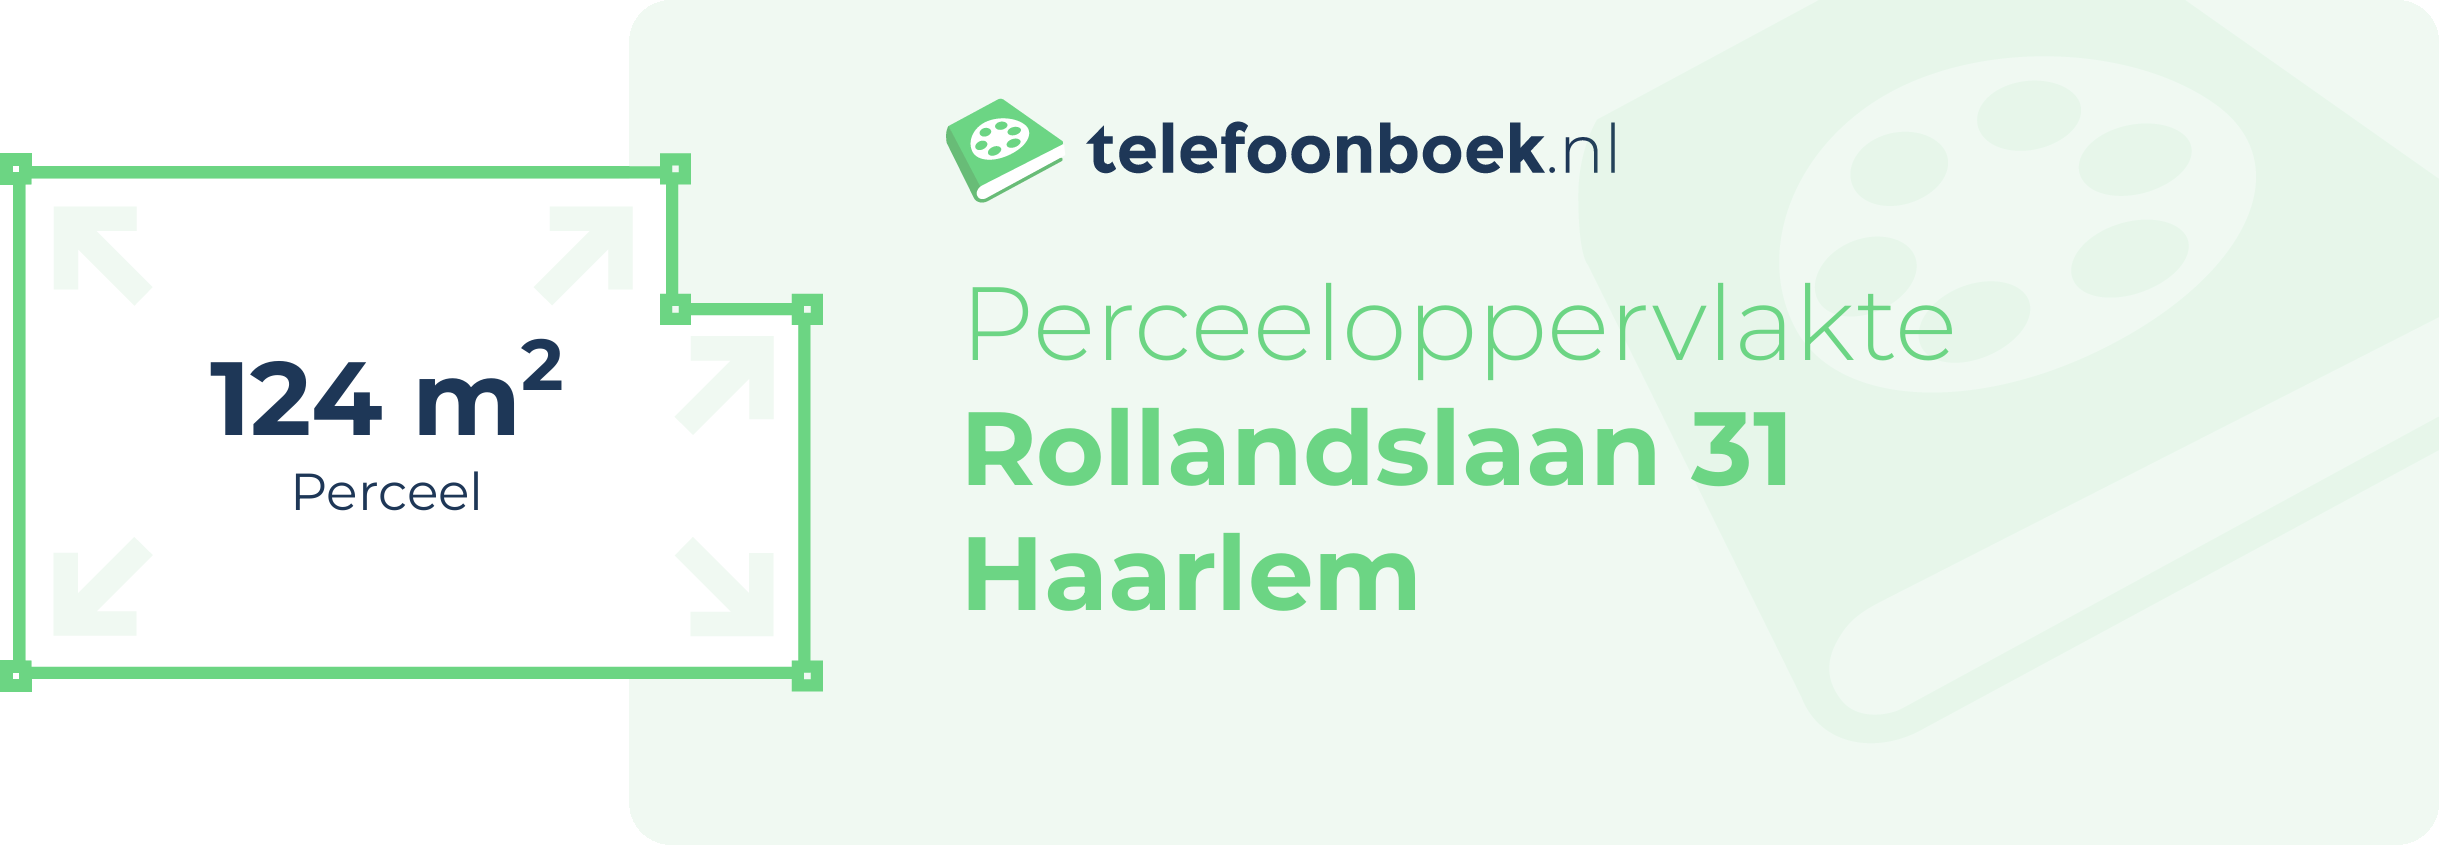 Perceeloppervlakte Rollandslaan 31 Haarlem